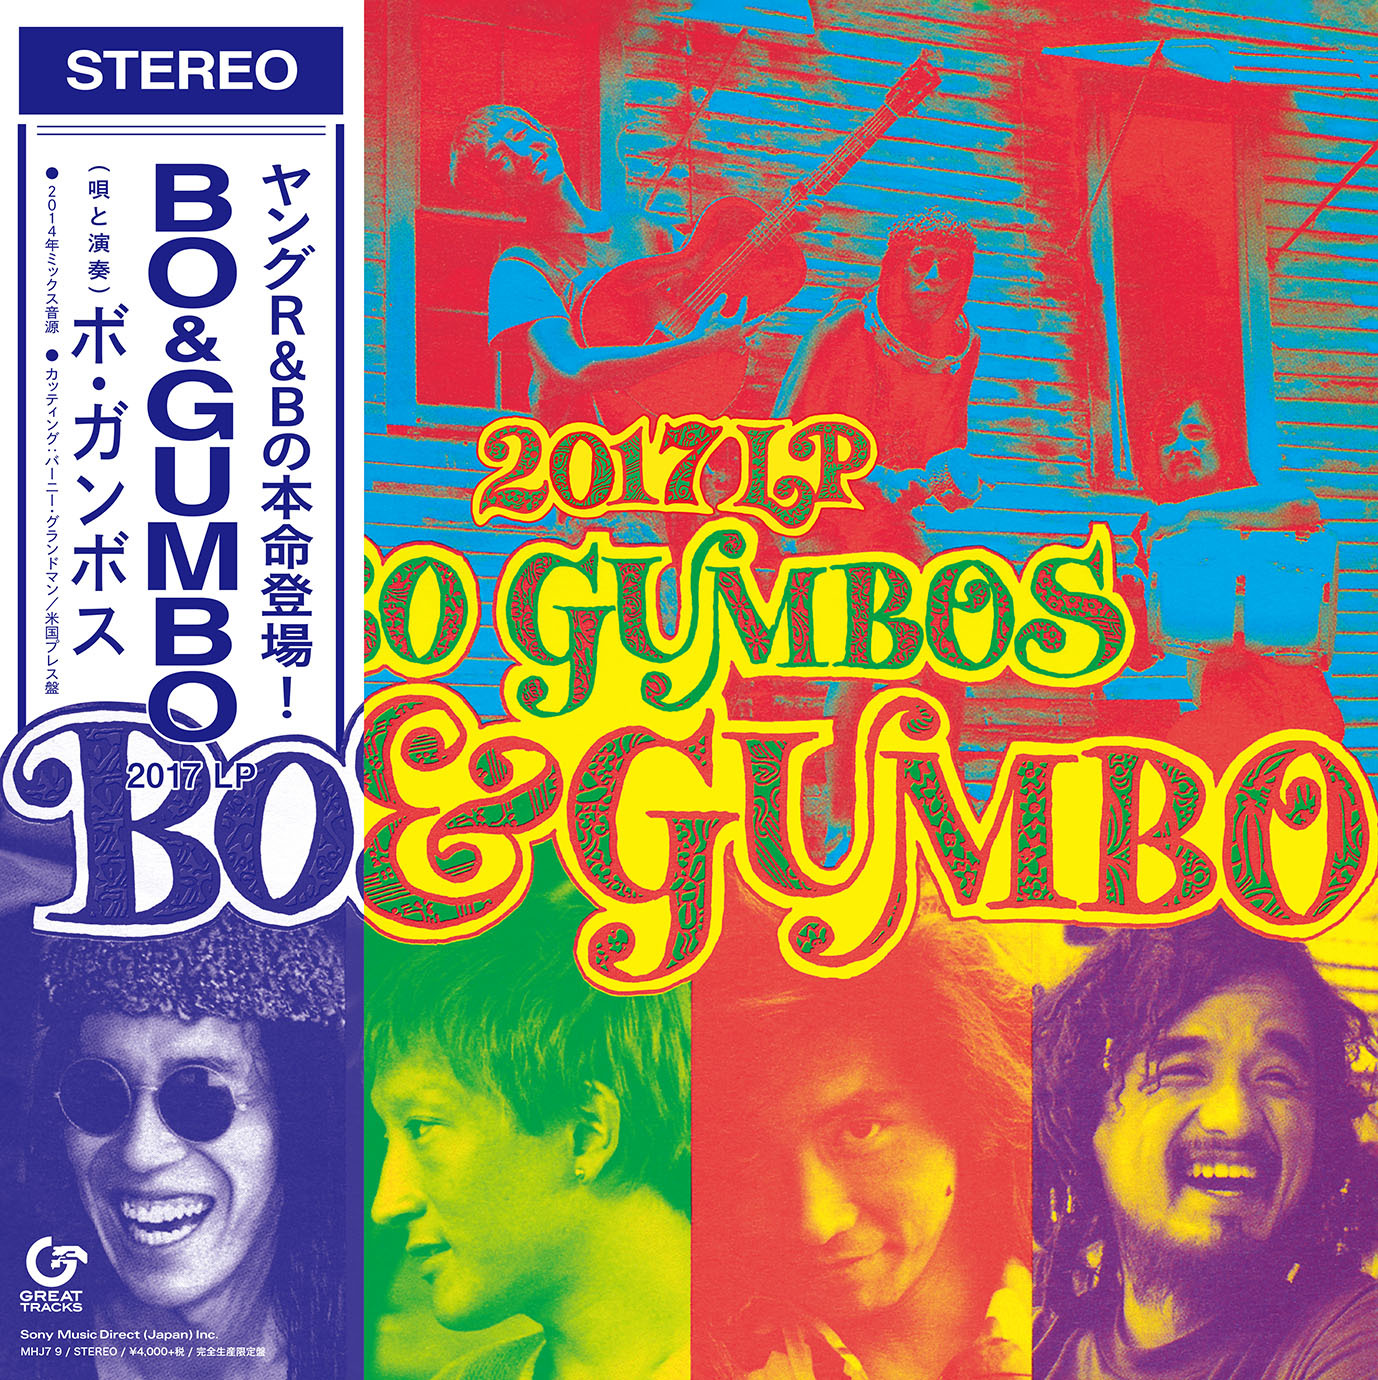 ボ・ガンボス『BO & GUMBO – 2017 LP』